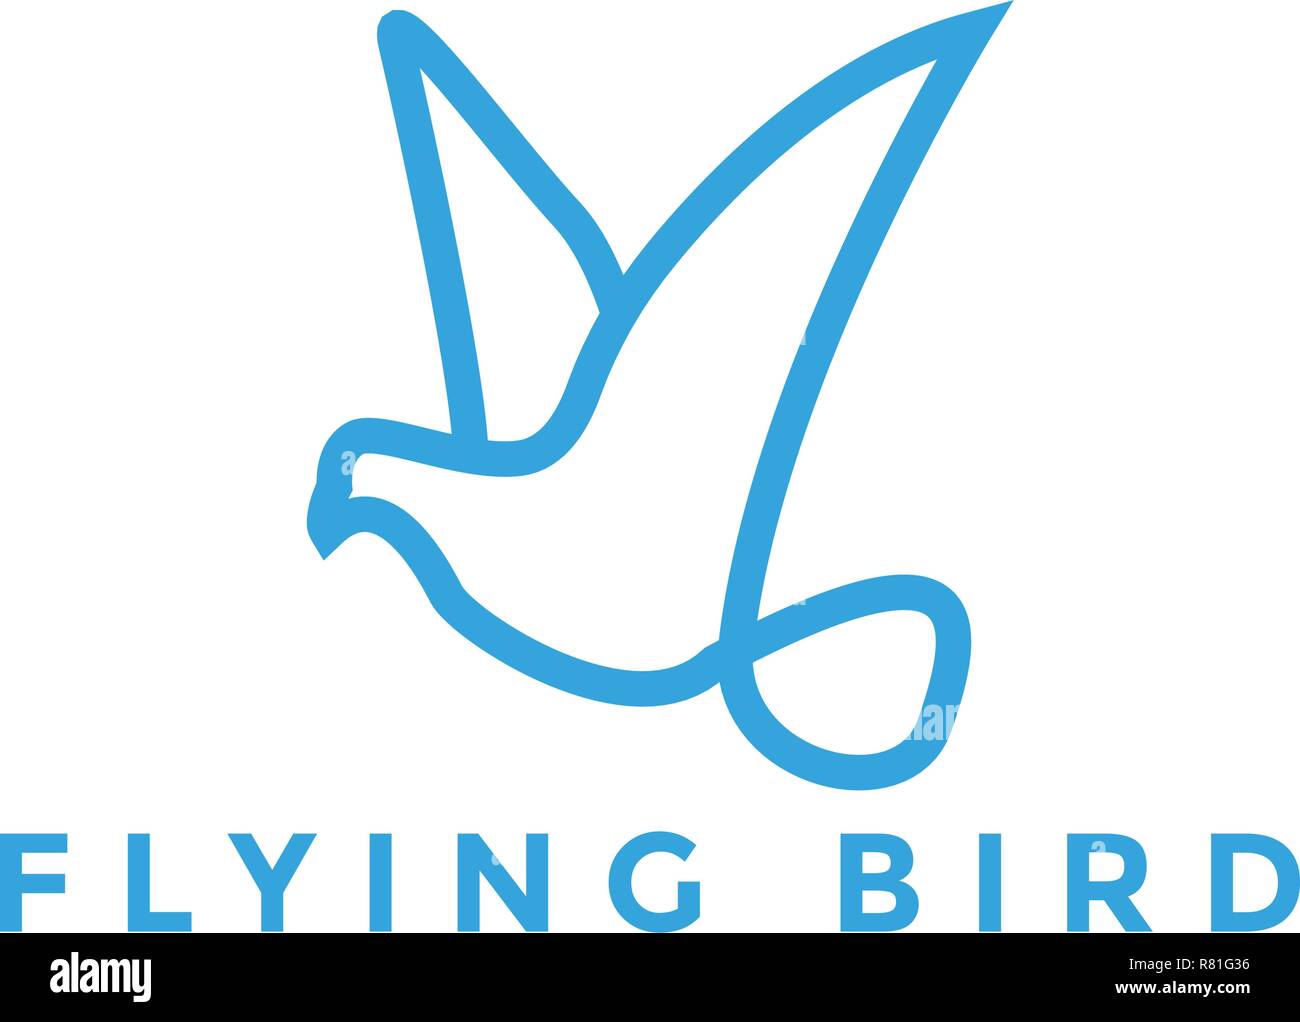 Flying bird logo design inspiration vector illustration Stock Vector ...